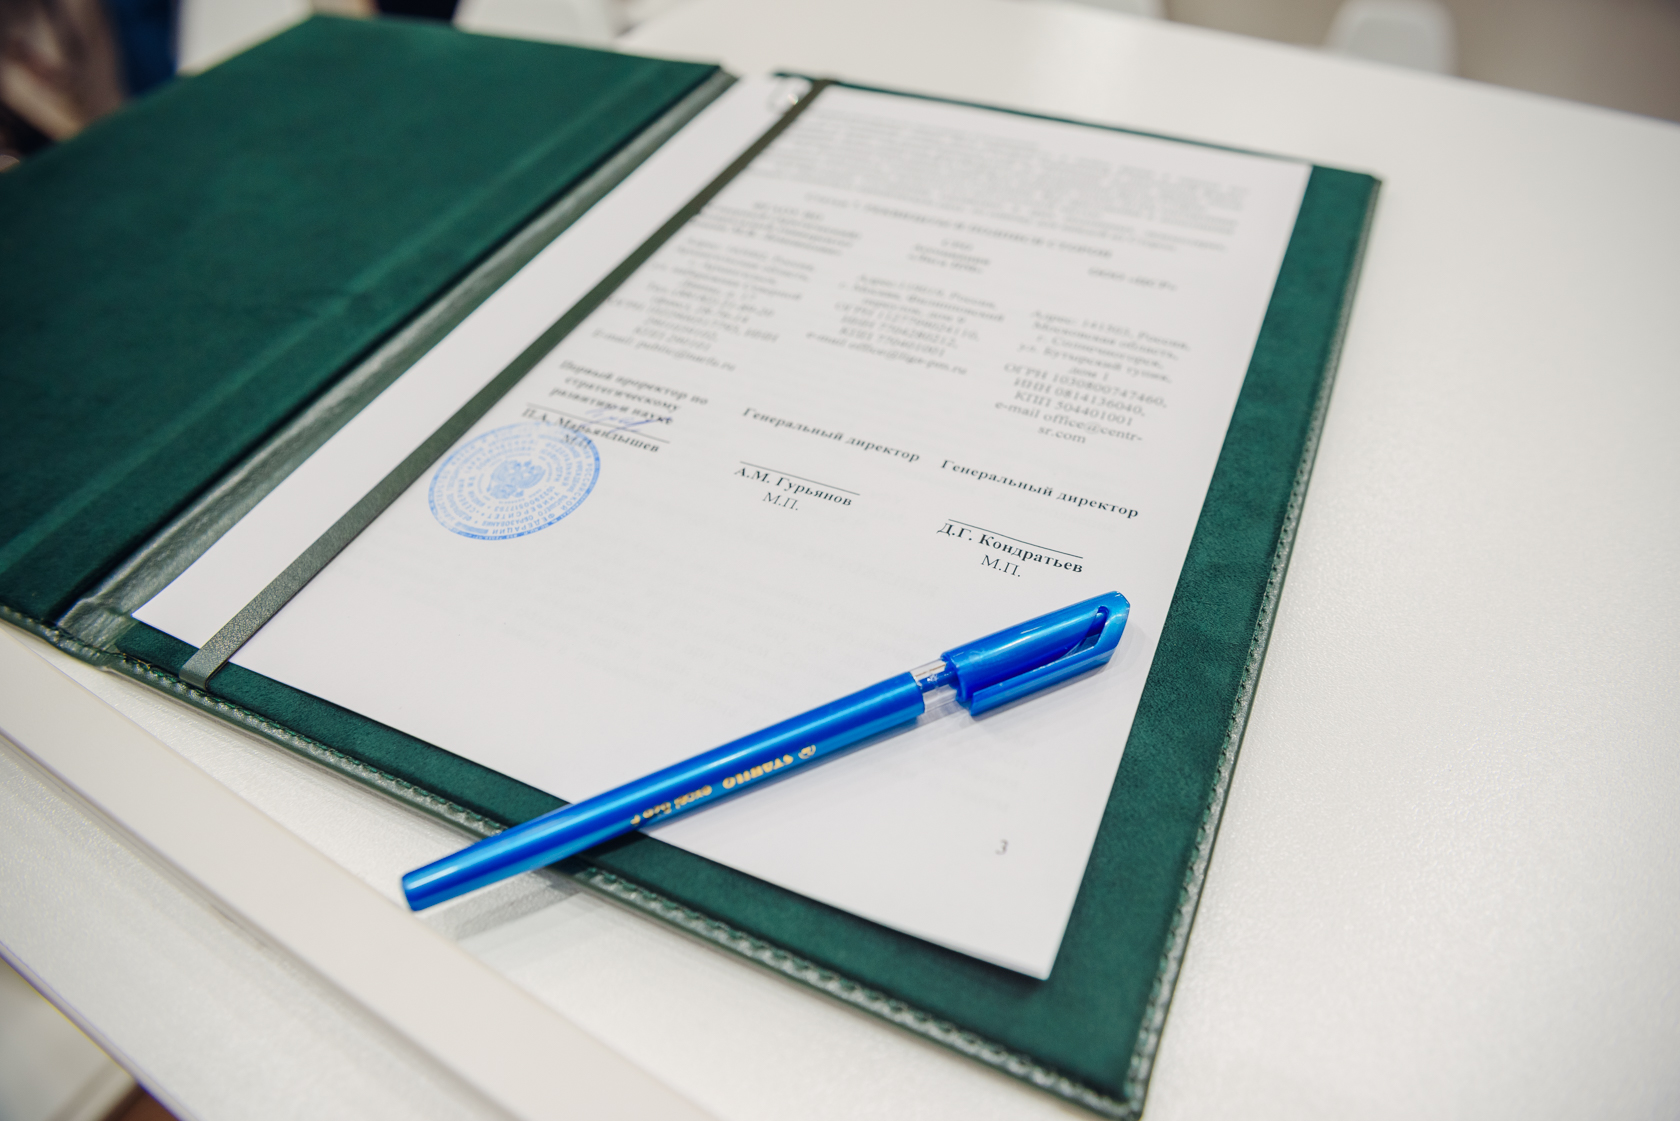 Лига переработчиков макулатуры и ЦСР подписали соглашение о сотрудничестве с Северным (Арктическим) федеральным университетом